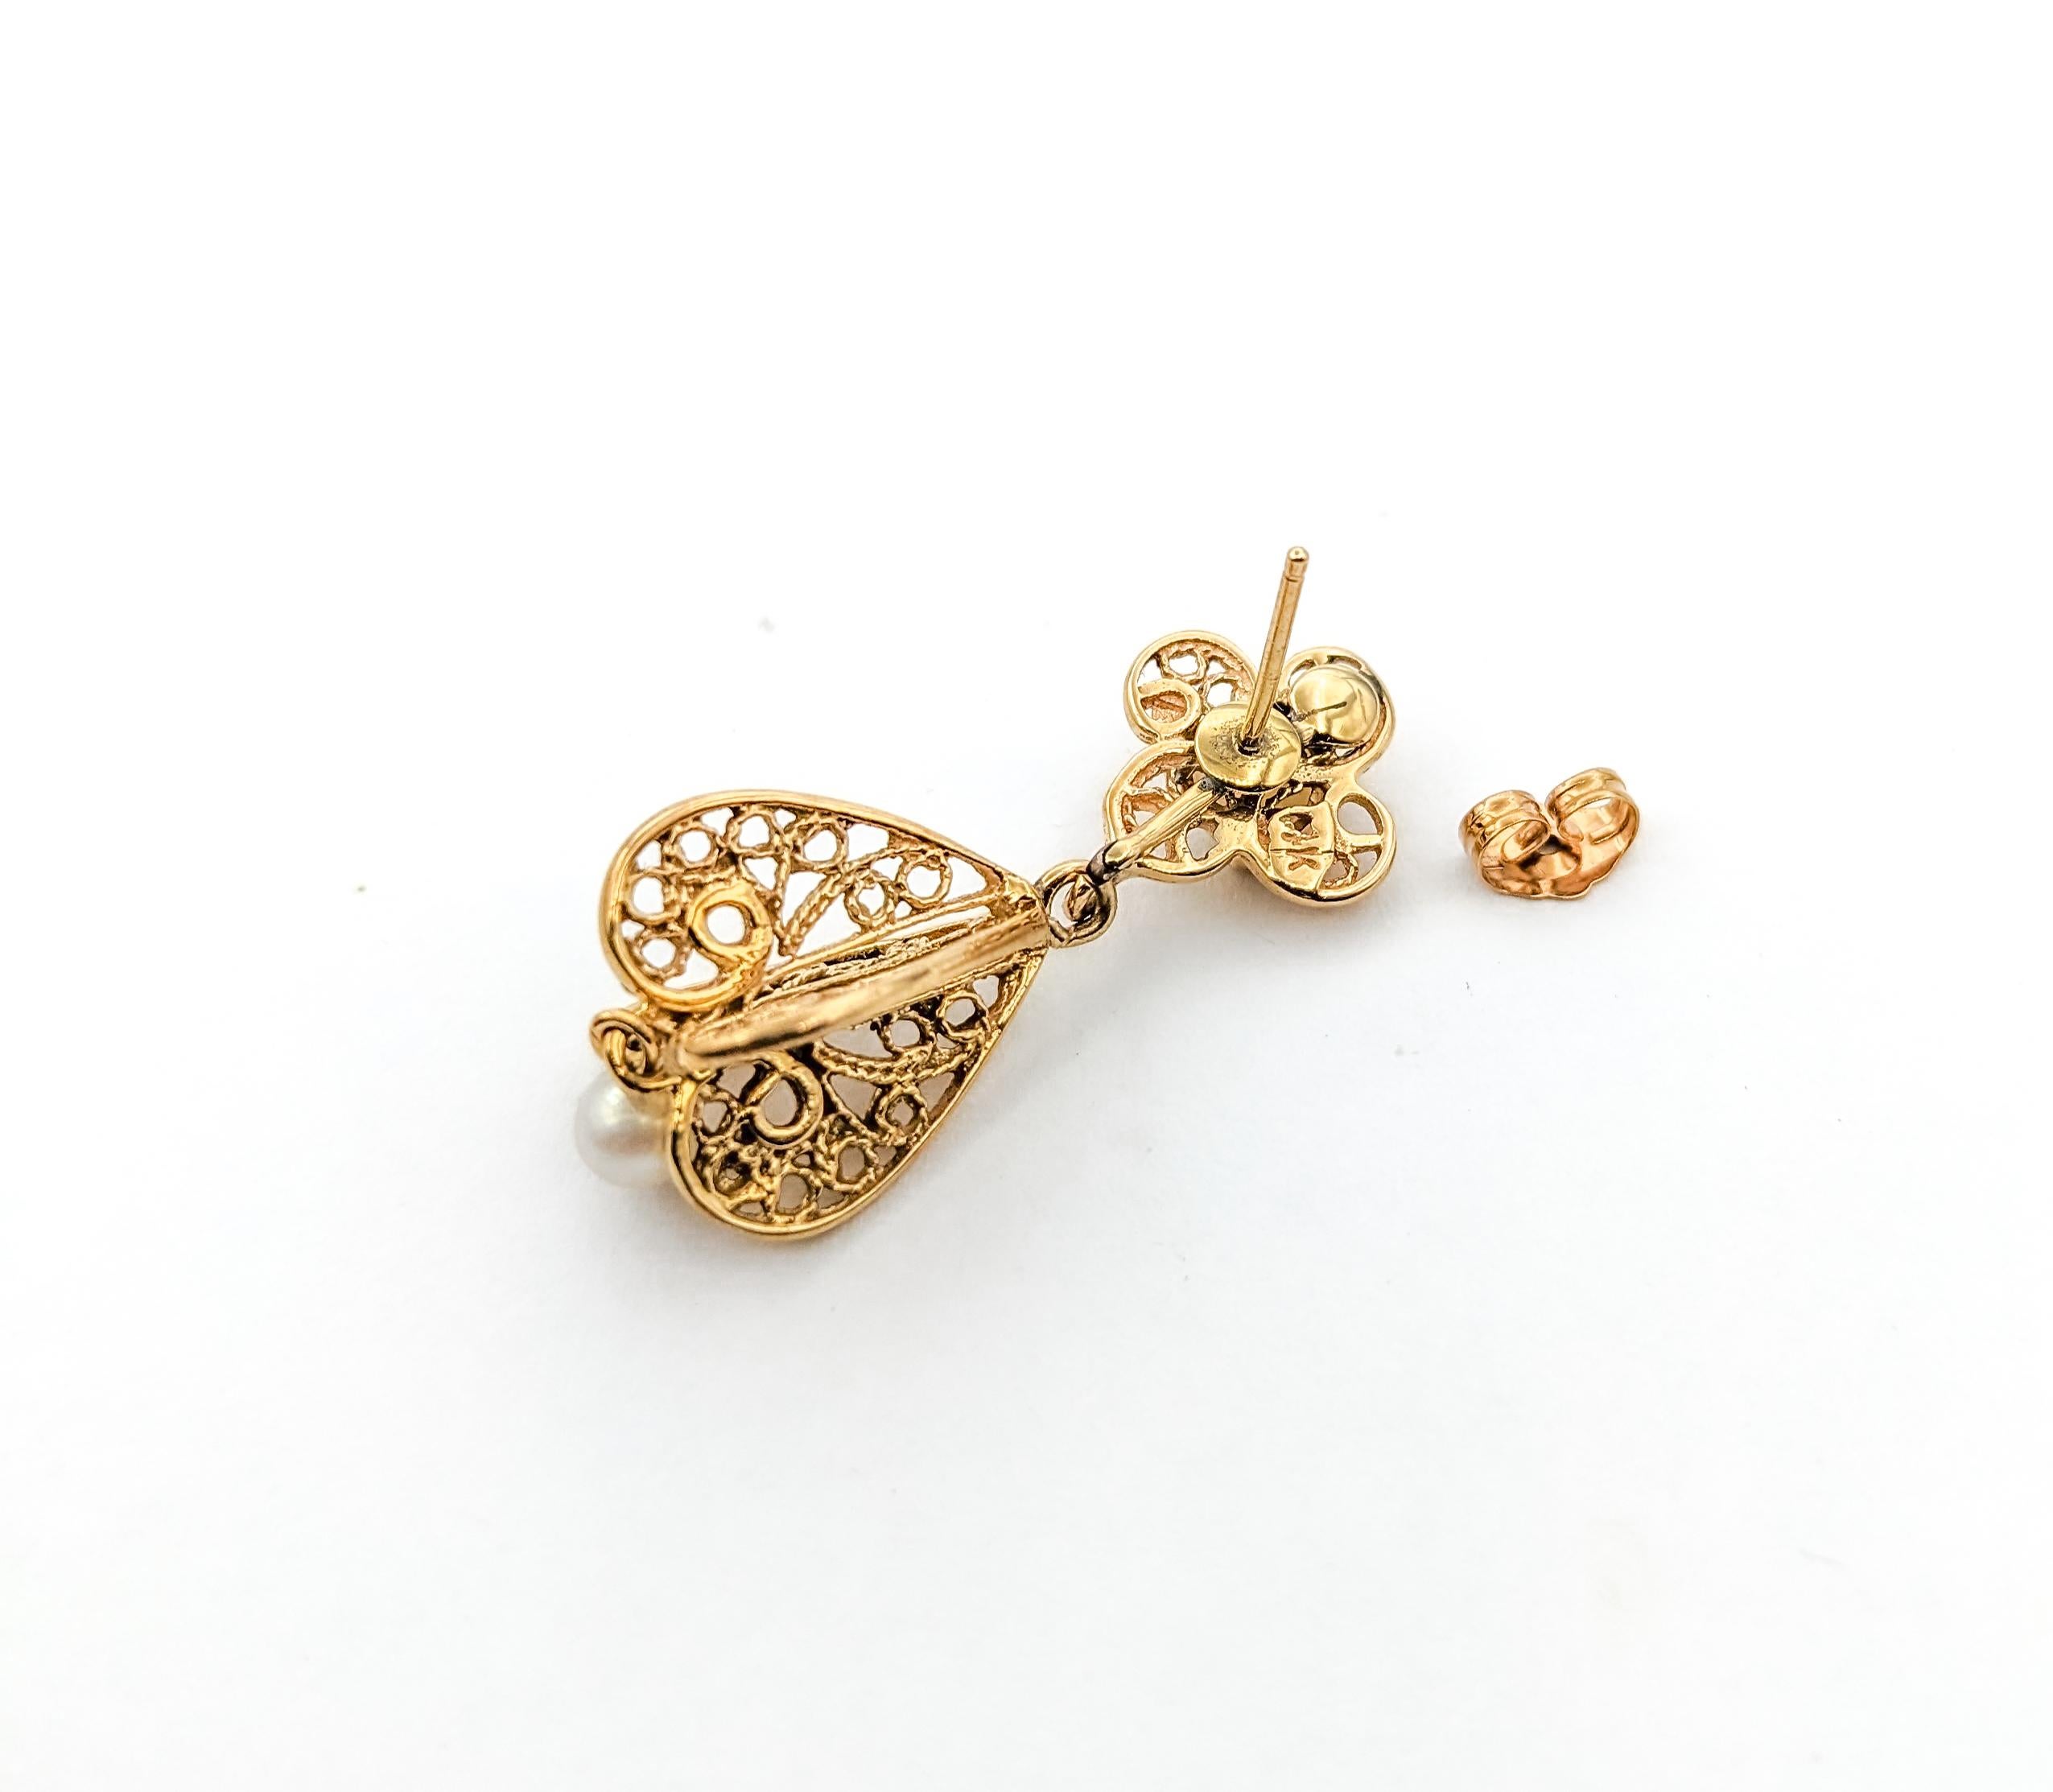 Ohrringe aus Gelbgold mit 4 mm Akoya-Perlen und 5 mm australischen Opalen, Vintage


Wir präsentieren diese eleganten Vintage-Ohrringe aus 14-karätigem Gelbgold. Diese Ohrringe bestechen durch ihr klassisches Design mit 4 mm großen Akoya-Perlen und